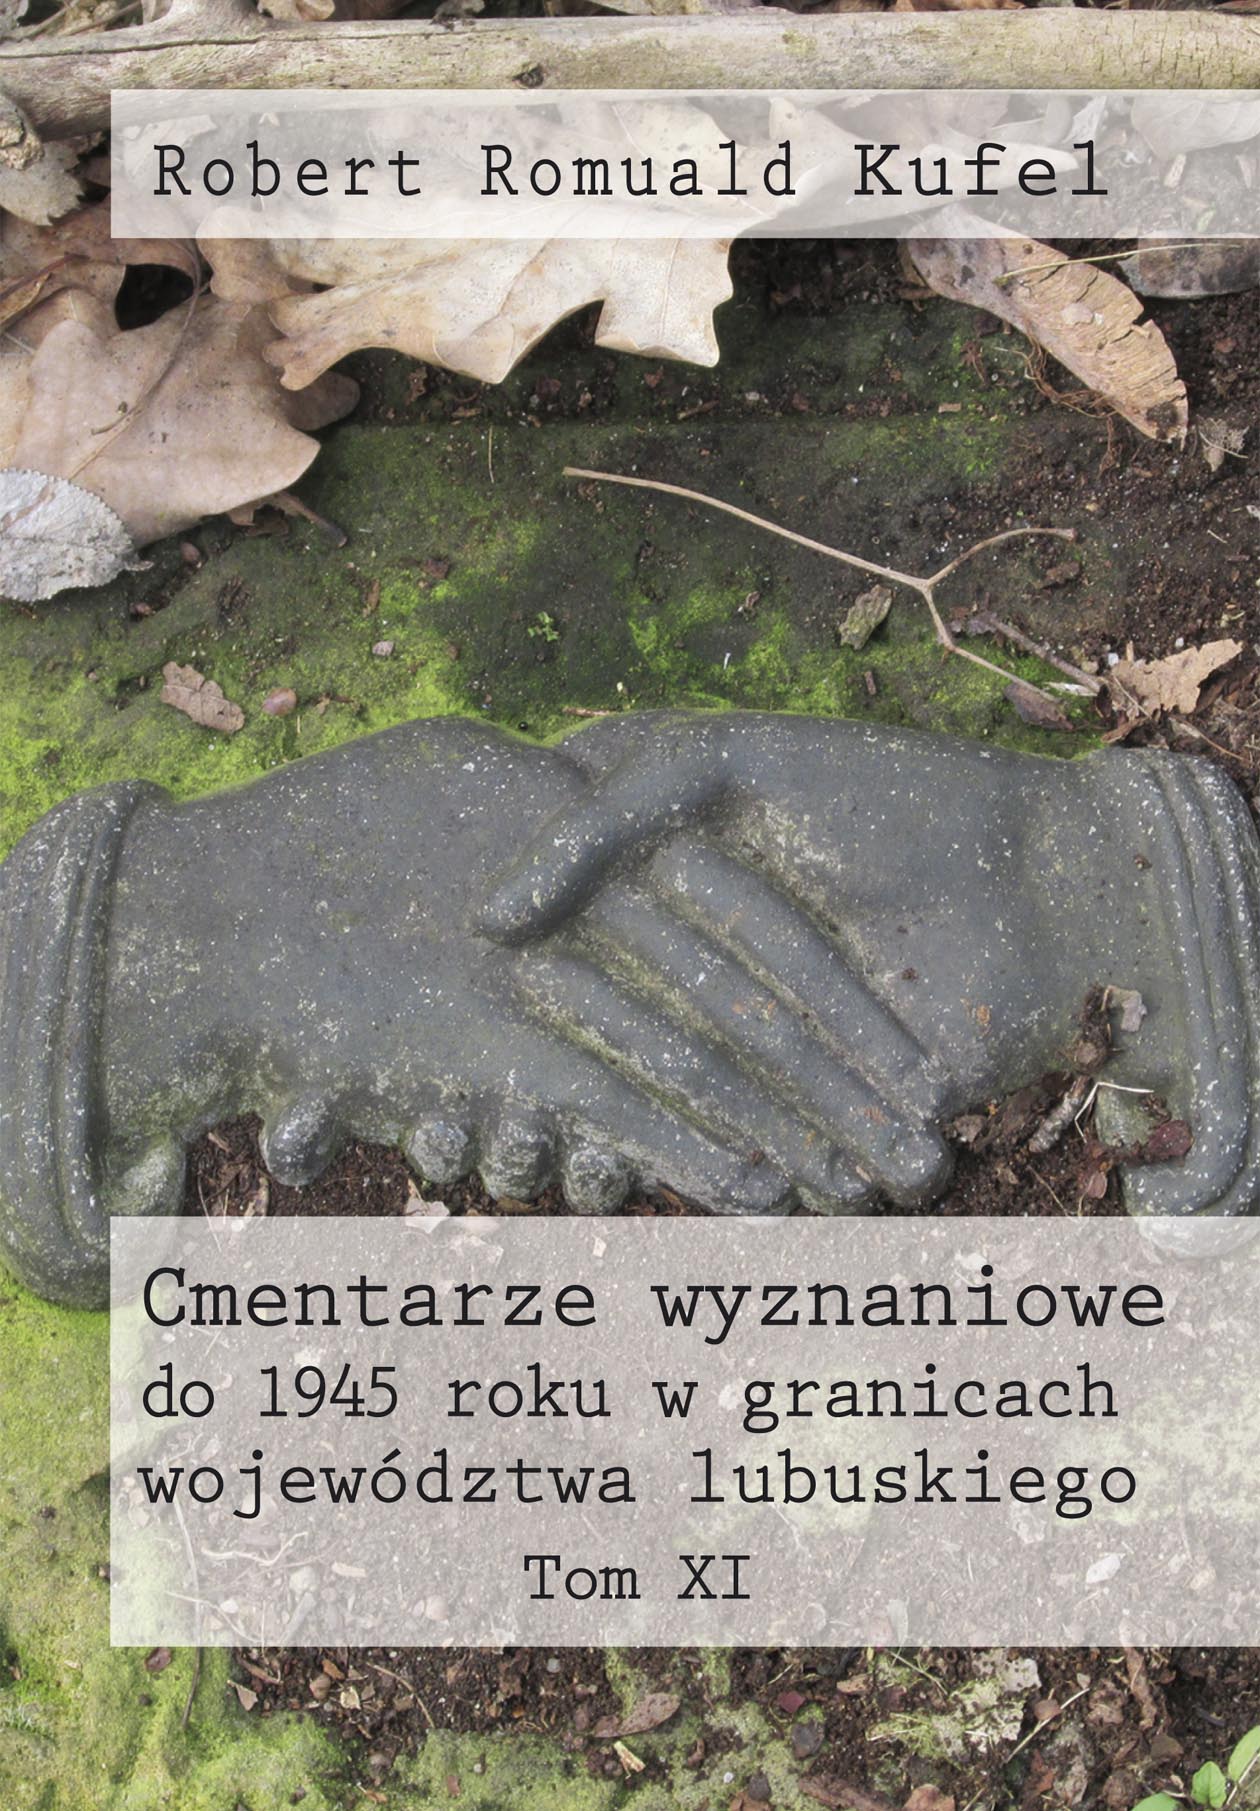 Robert Romuald Kufel "Cmentarze wyznaniowe do 1945 roku w granicach województwa lubuskiego" Tom XI